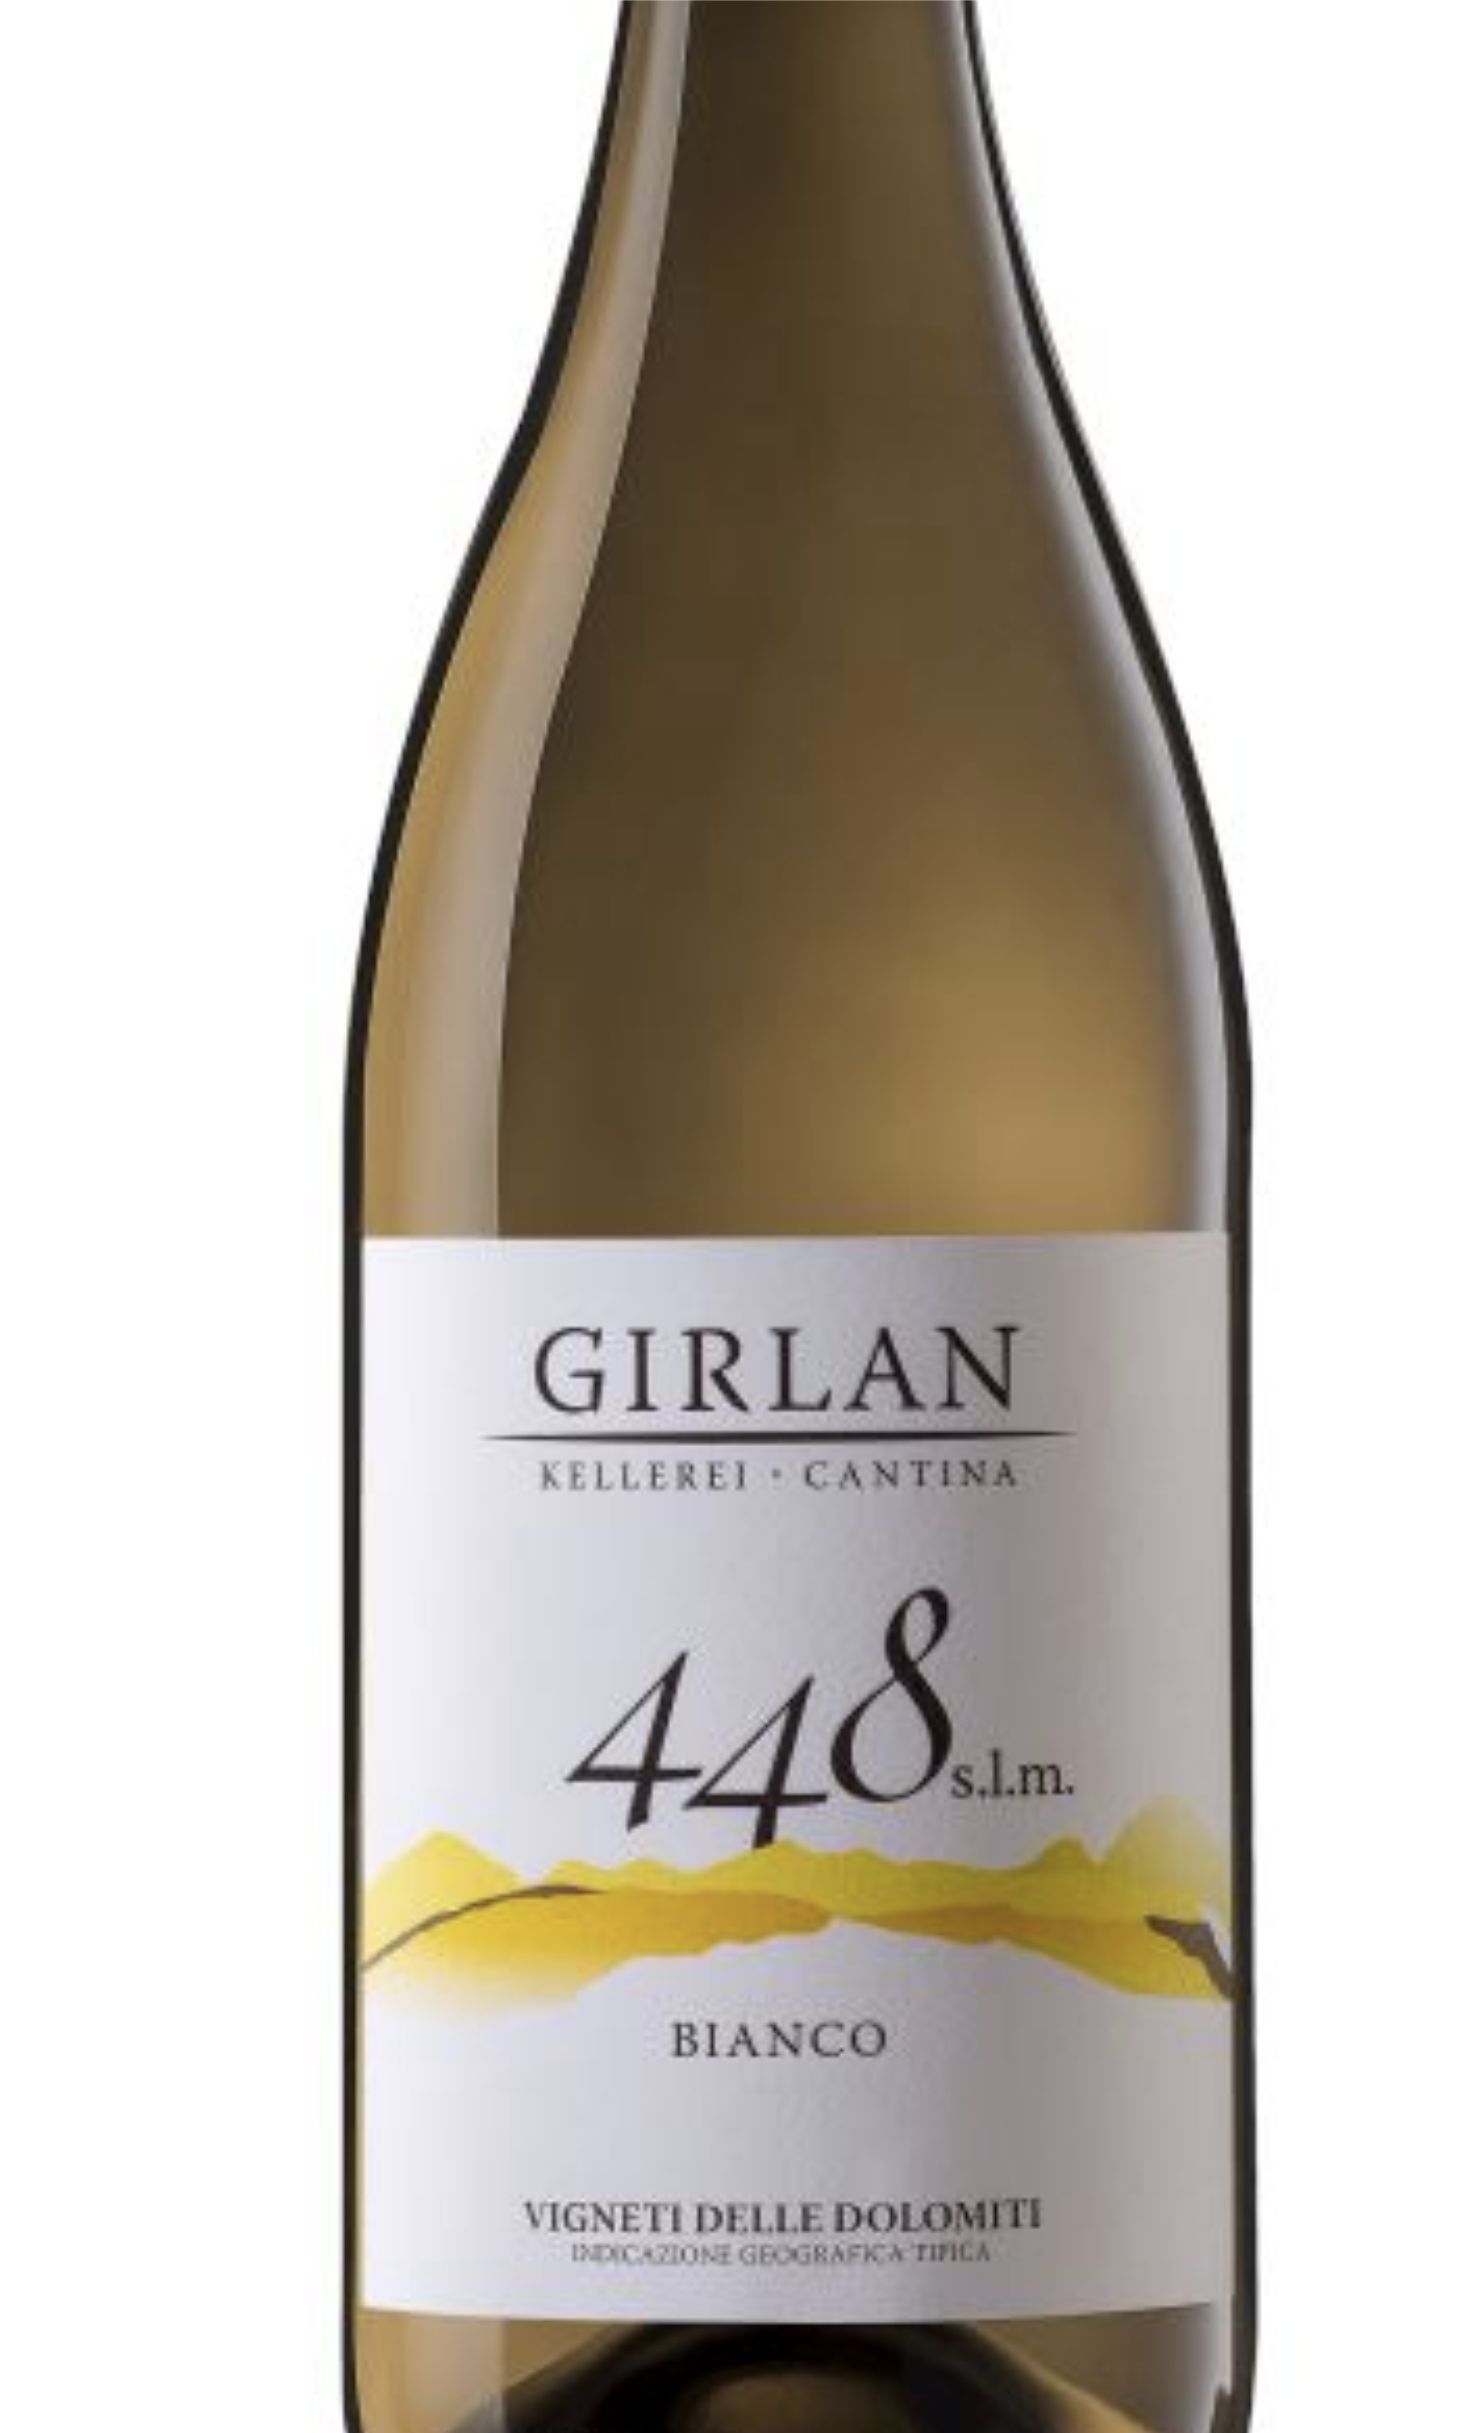 Этикетка Вино с защищенным географическим указанием "448 с.л.м. Гирлан Бьянко" сухое белое, креп. 12,5%,  емк 0,75л